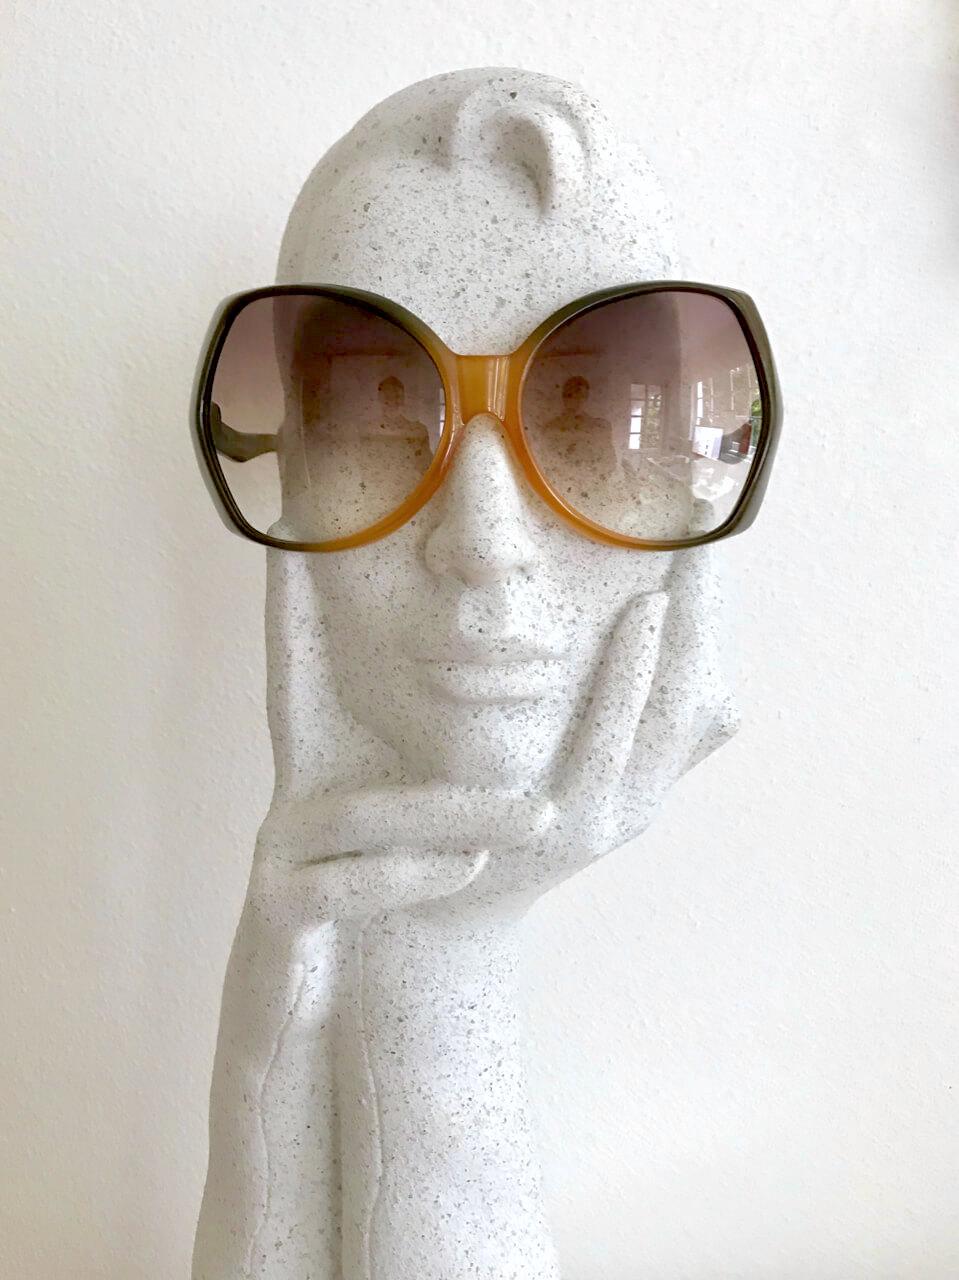 Diese auffällige und extrem seltene Christian Dior D06 Sonnenbrille hat einen übergroßen, zweifarbigen Rahmen in Form eines Schmetterlings. Der Rahmen ist aus Optyl mit einem Farbverlauf von bernsteinfarben bis khaki. Die Kunststoffgläser sind in